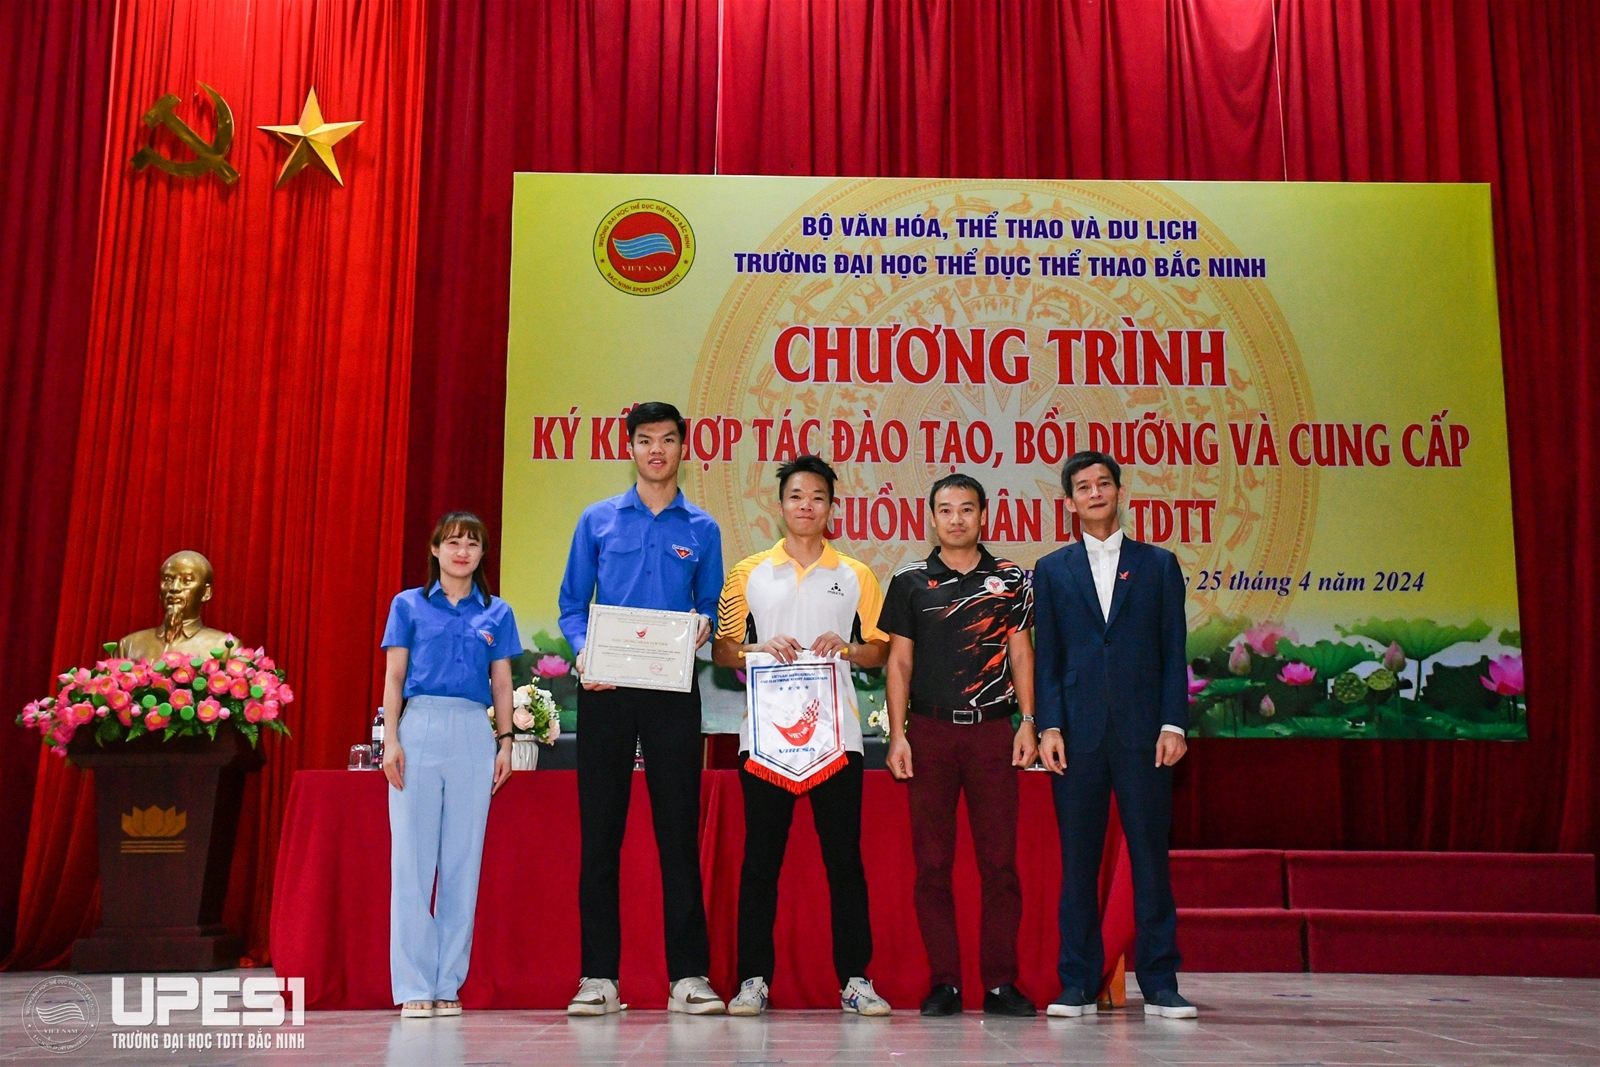 Chương trình ký kết hợp tác đào tạo, bồi dưỡng và cung cấp nguồn nhân lực TDTT tại Trường Đại học TDTT Bắc Ninh năm 2024 - Ảnh 2.